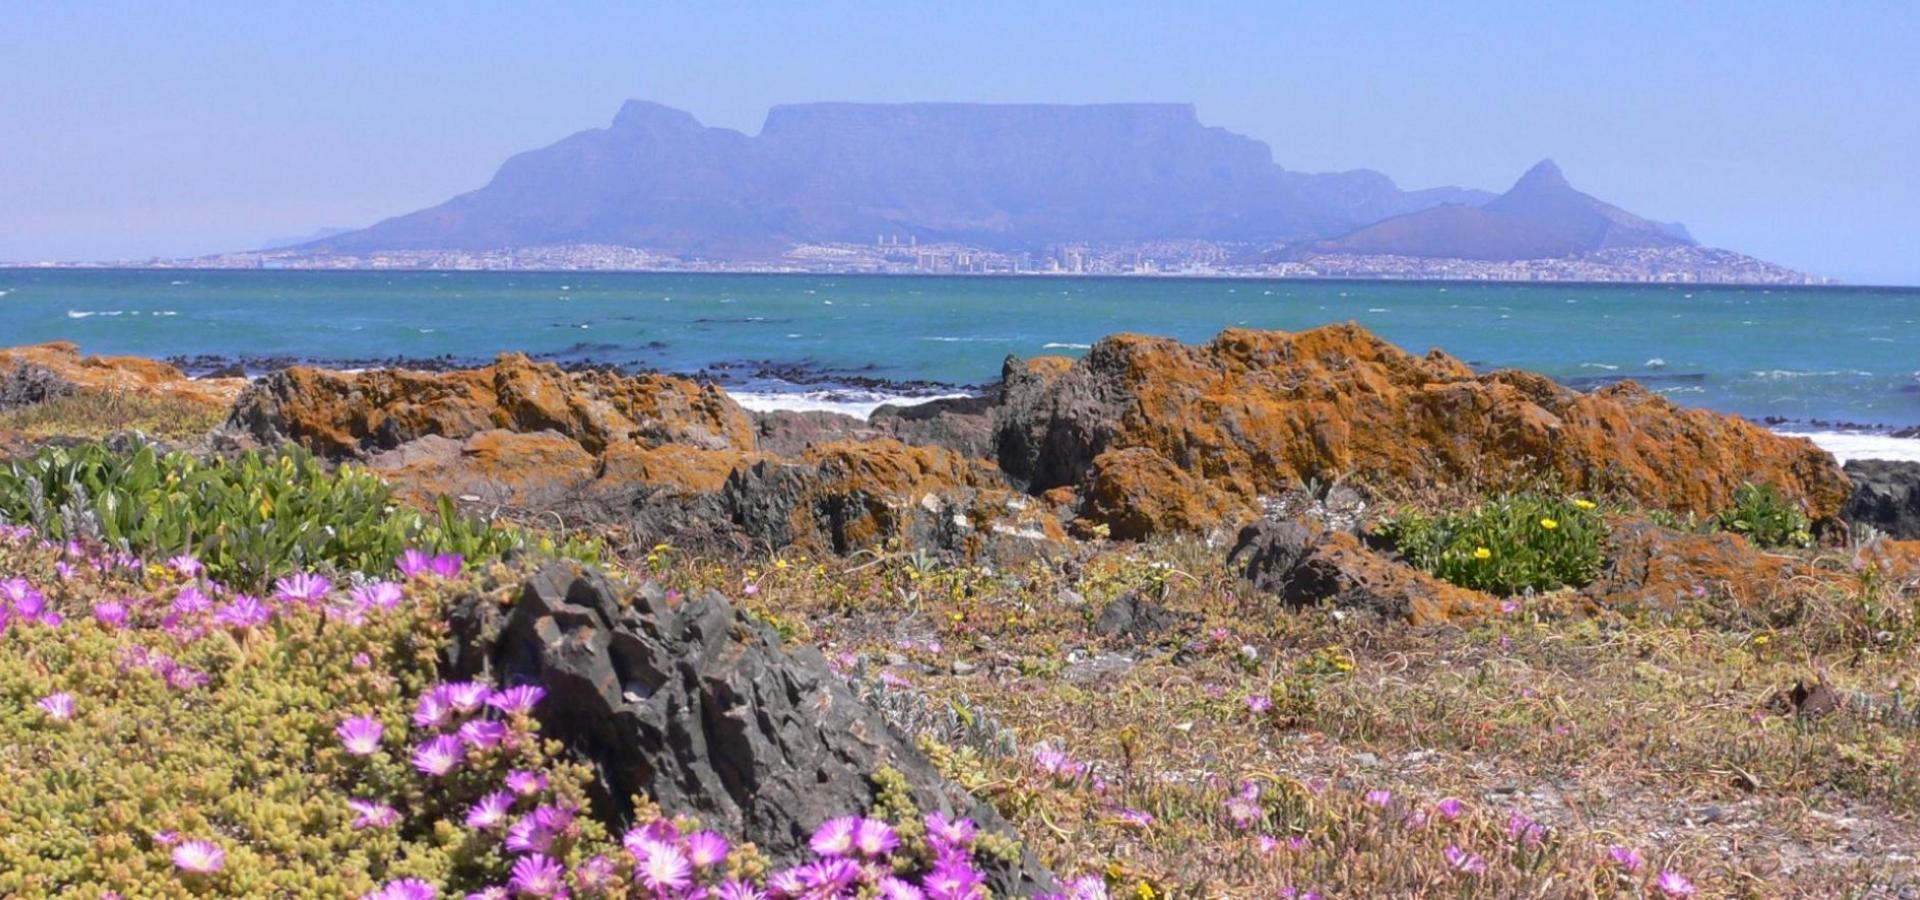 Afrika Reise: Kapstadt mit dem Tafelberg und die Kapregion entdecken